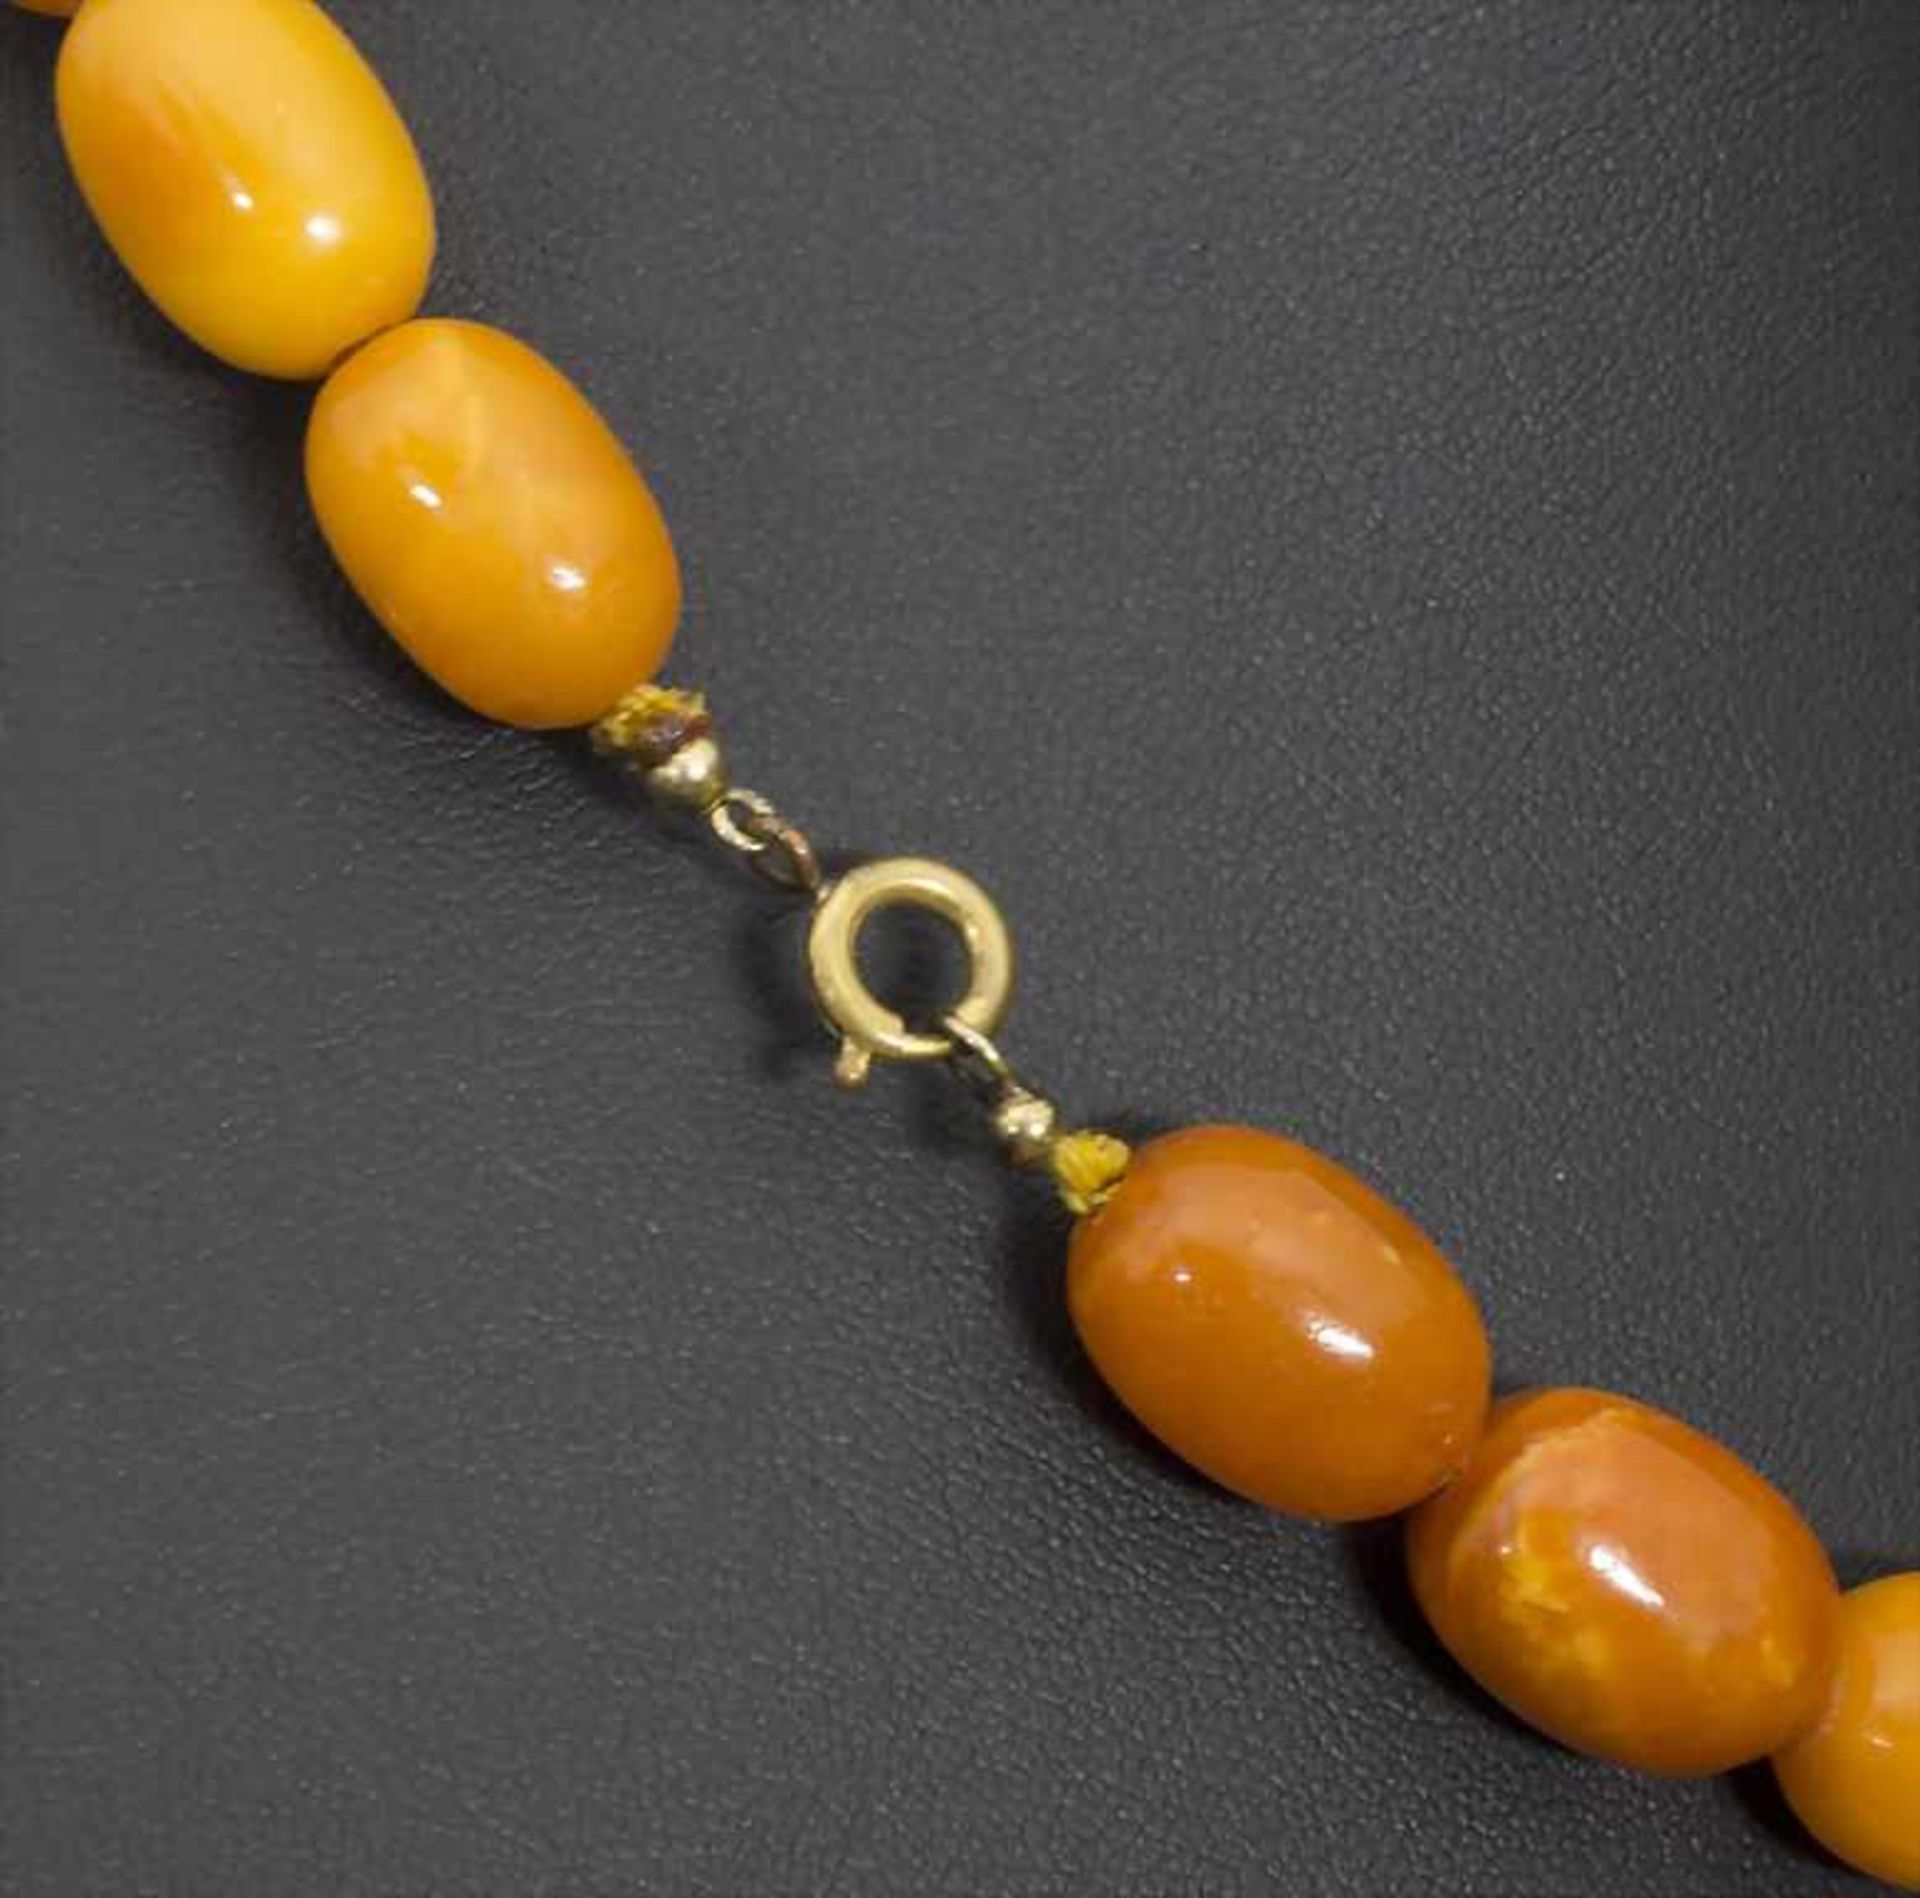 Bernsteinkette / Oliven Kette / An amber olives chain - Image 3 of 3